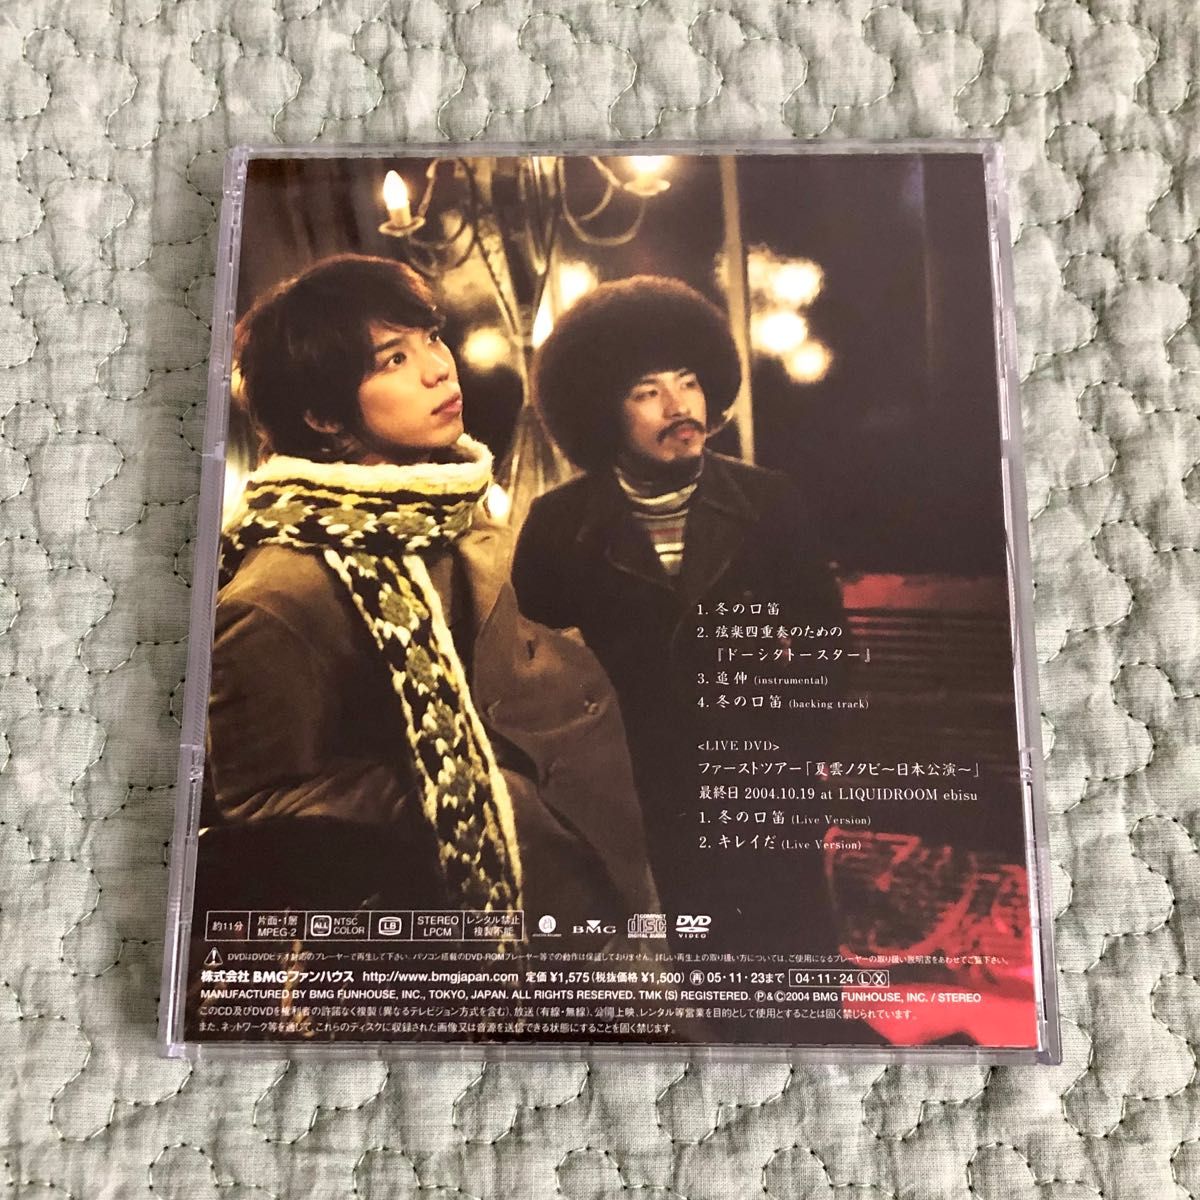 ★スキマスイッチ★ CD  冬の口笛 (初回限定盤) (DVD付)  & ポストカード